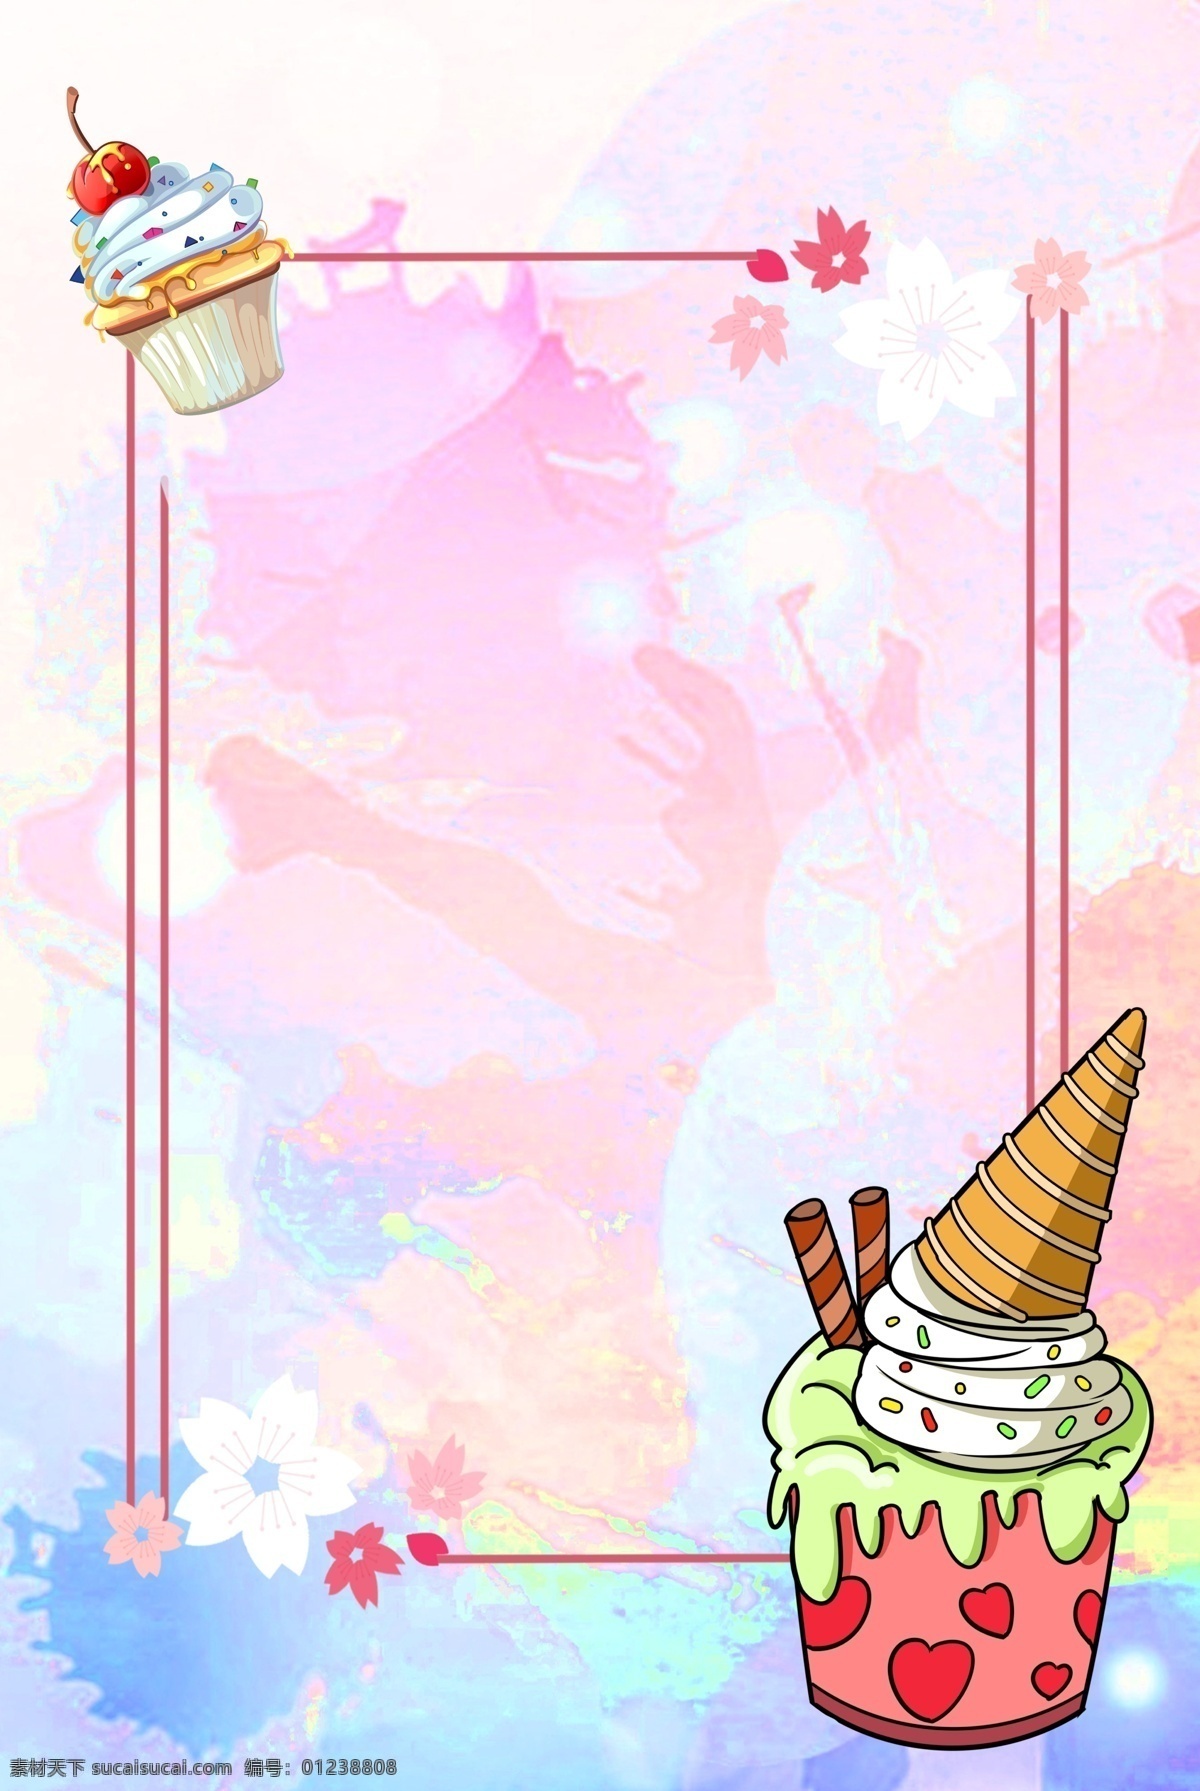 夏季 冰淇淋 甜筒 背景 冰爽 雪糕 夏 夏日 解暑 凉爽 边框 彩绘 可爱 卡通